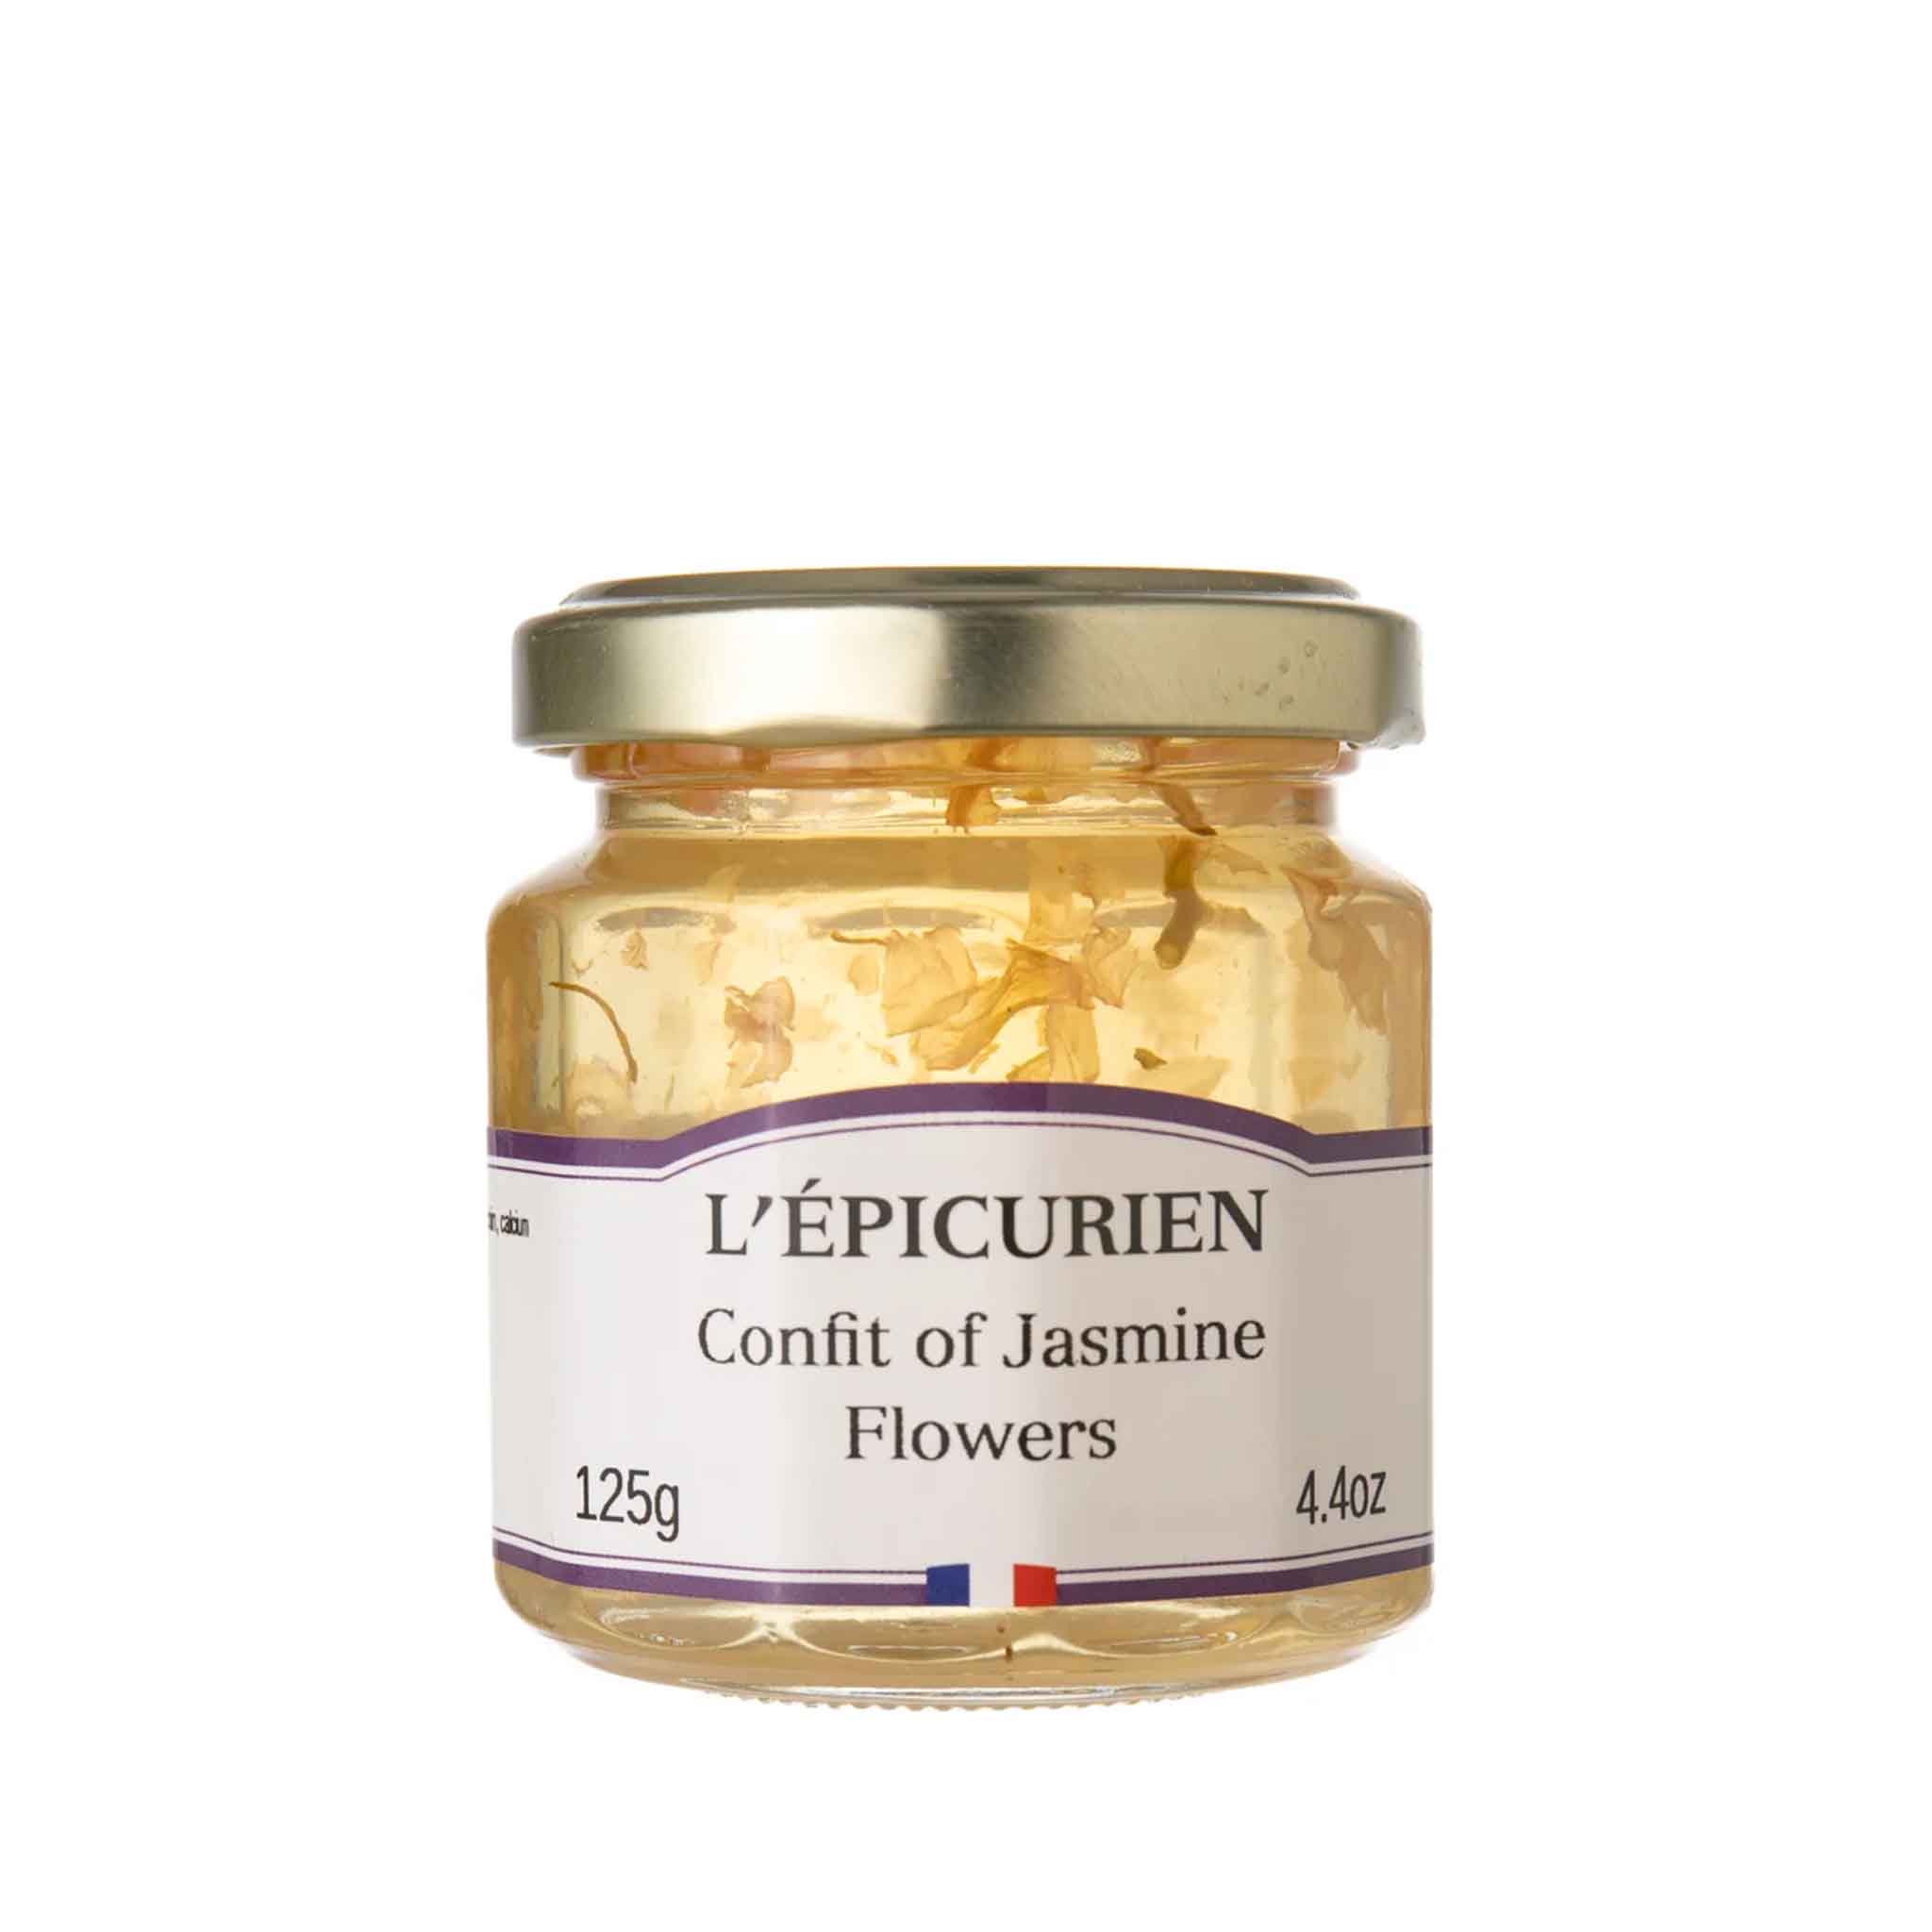 L'EPICURIEN JASMINE FLOWERS CONFIT 125g